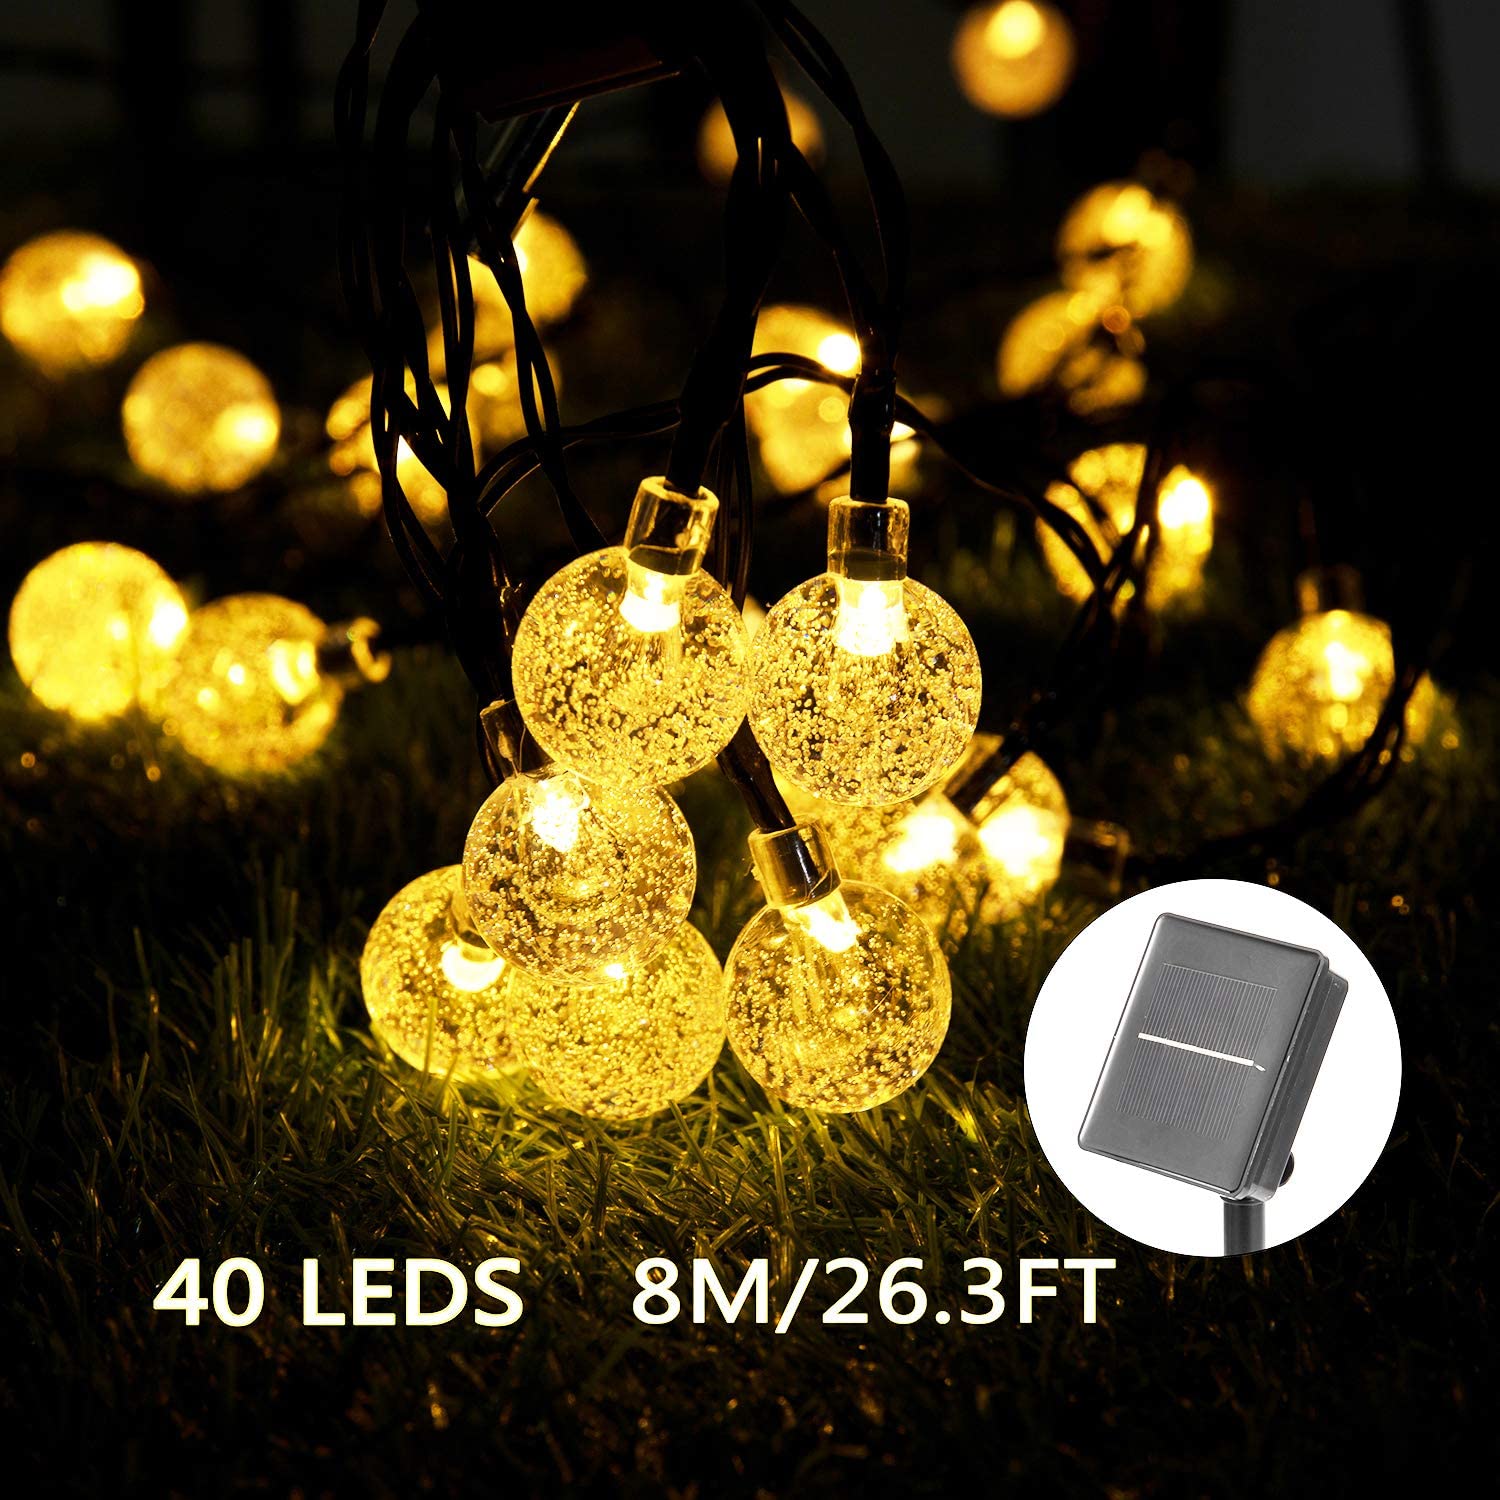 Catena Luminosa Solare - 40 LED 8M/26.3FT Luci Decorative Stringa Solari Impermeabile Esterno Illuminazione Luce Solare a Sfera di Cristallo per Giardino, Patio, Alberi (Bianco Caldo)